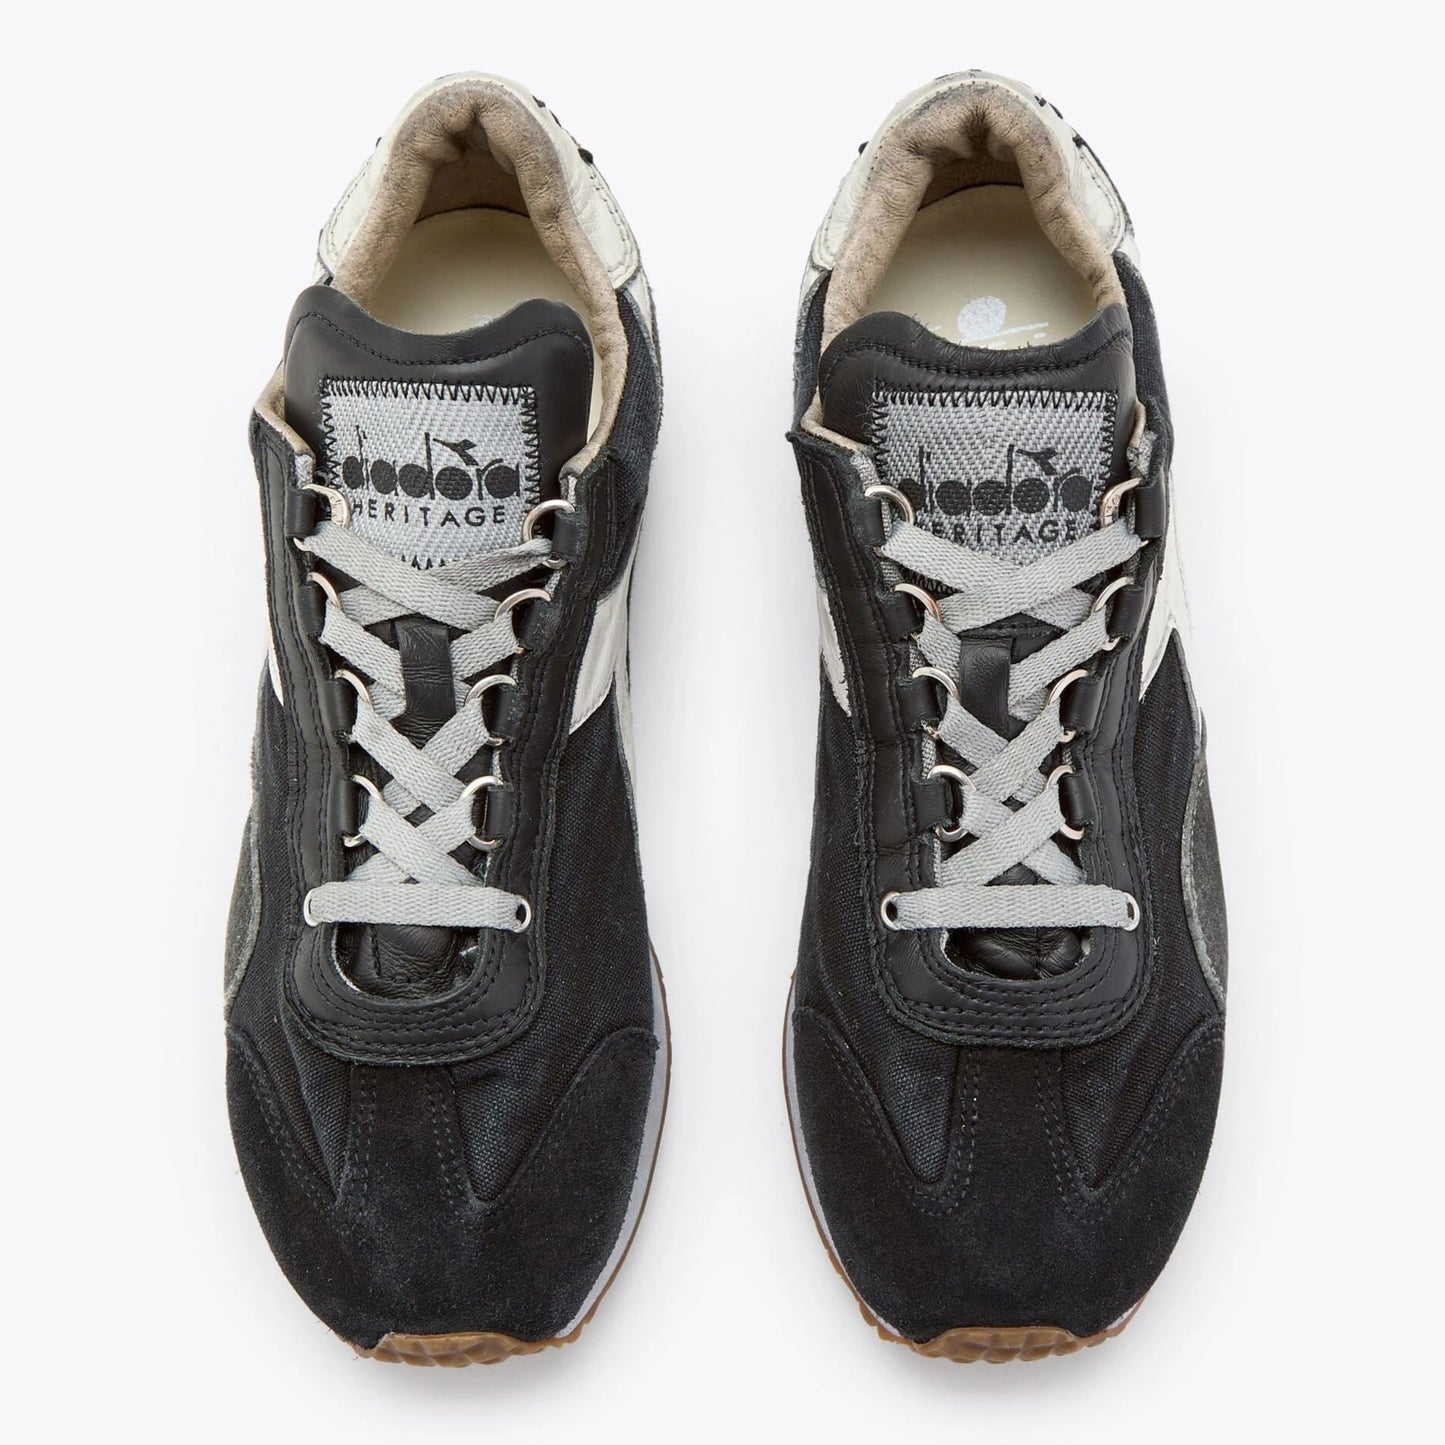 Sneakers De La Marca Diadora Para Unisex Modelo Equipe H Dirty Stone Wash Evo Black/Gray En Color Negro